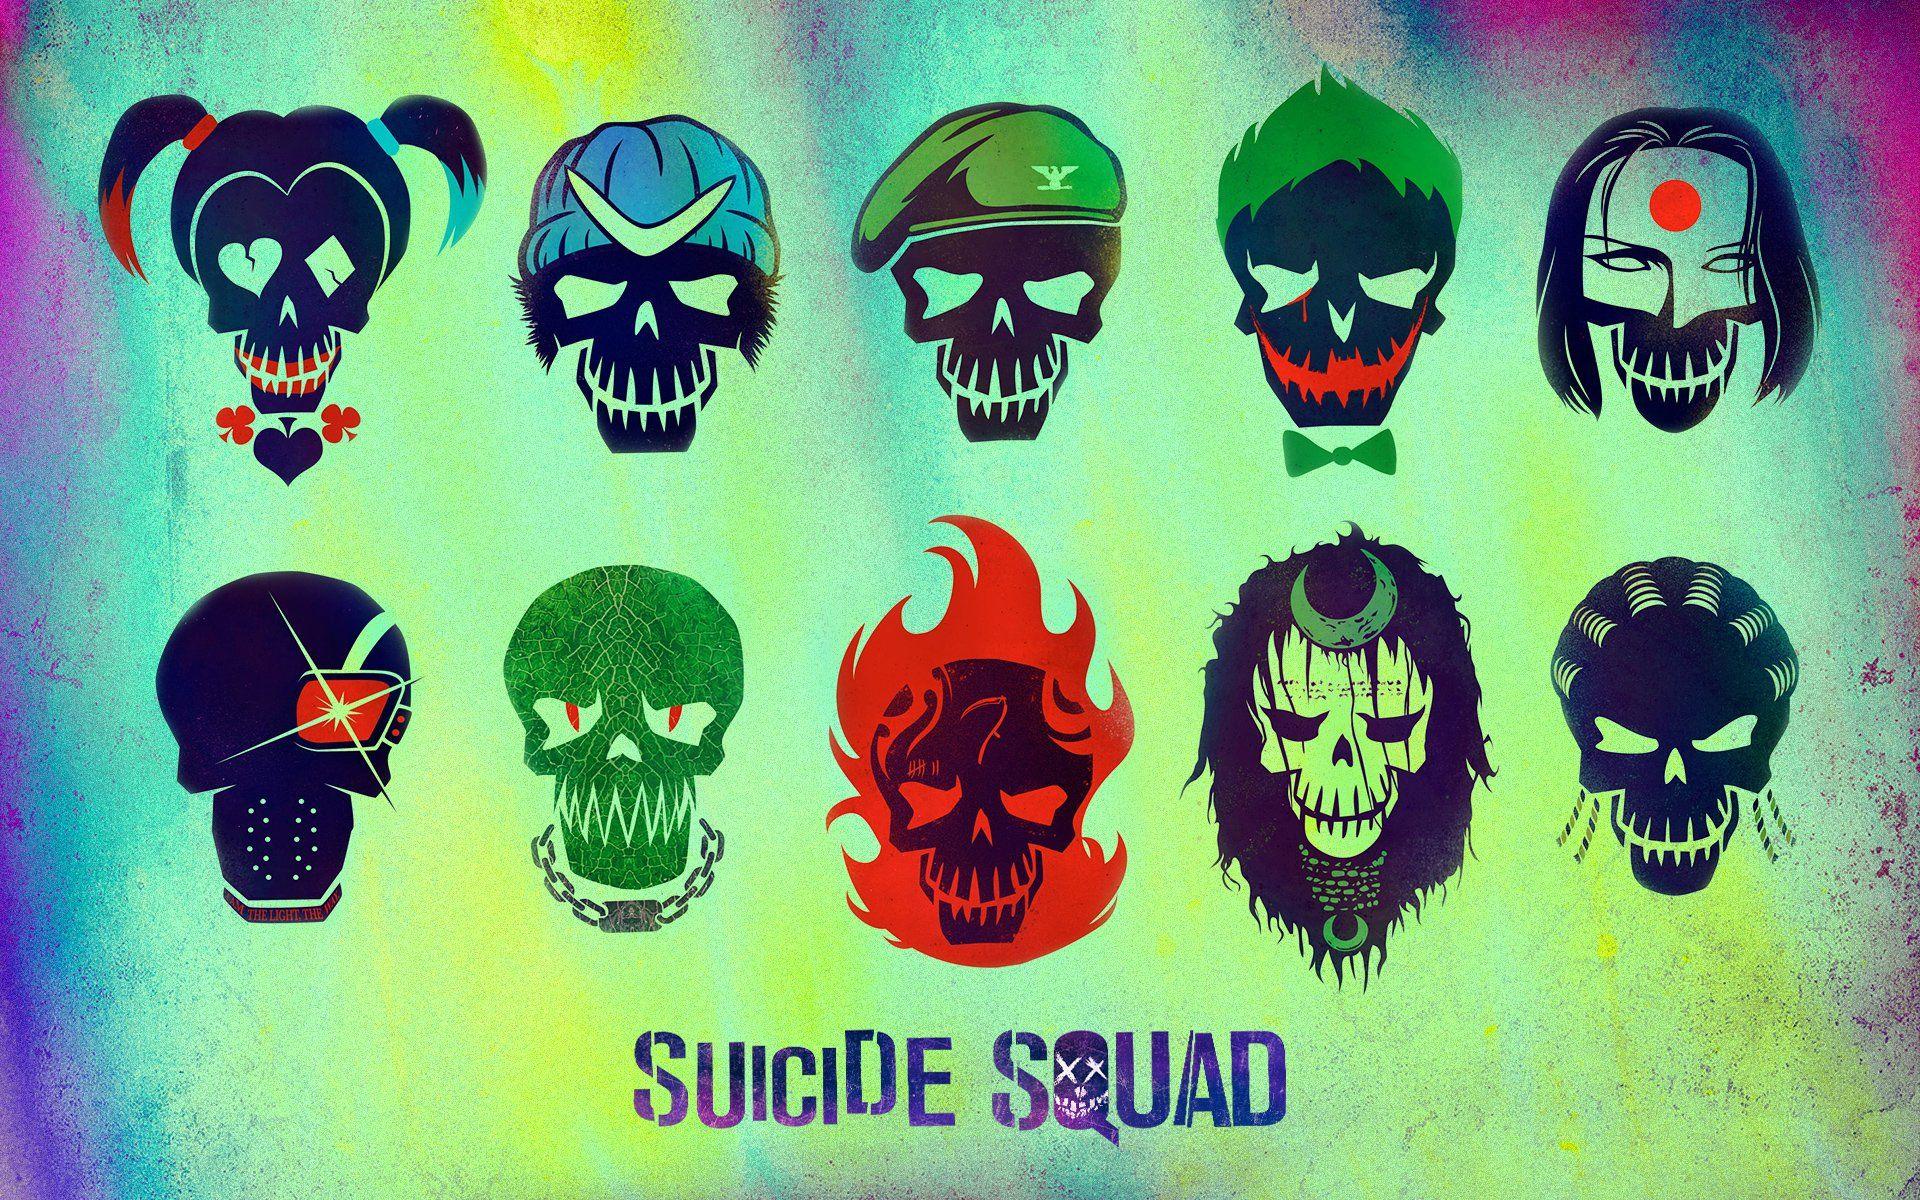 Suicide Squad Movie Desktop Wallpaper 61385 1920x1200 px